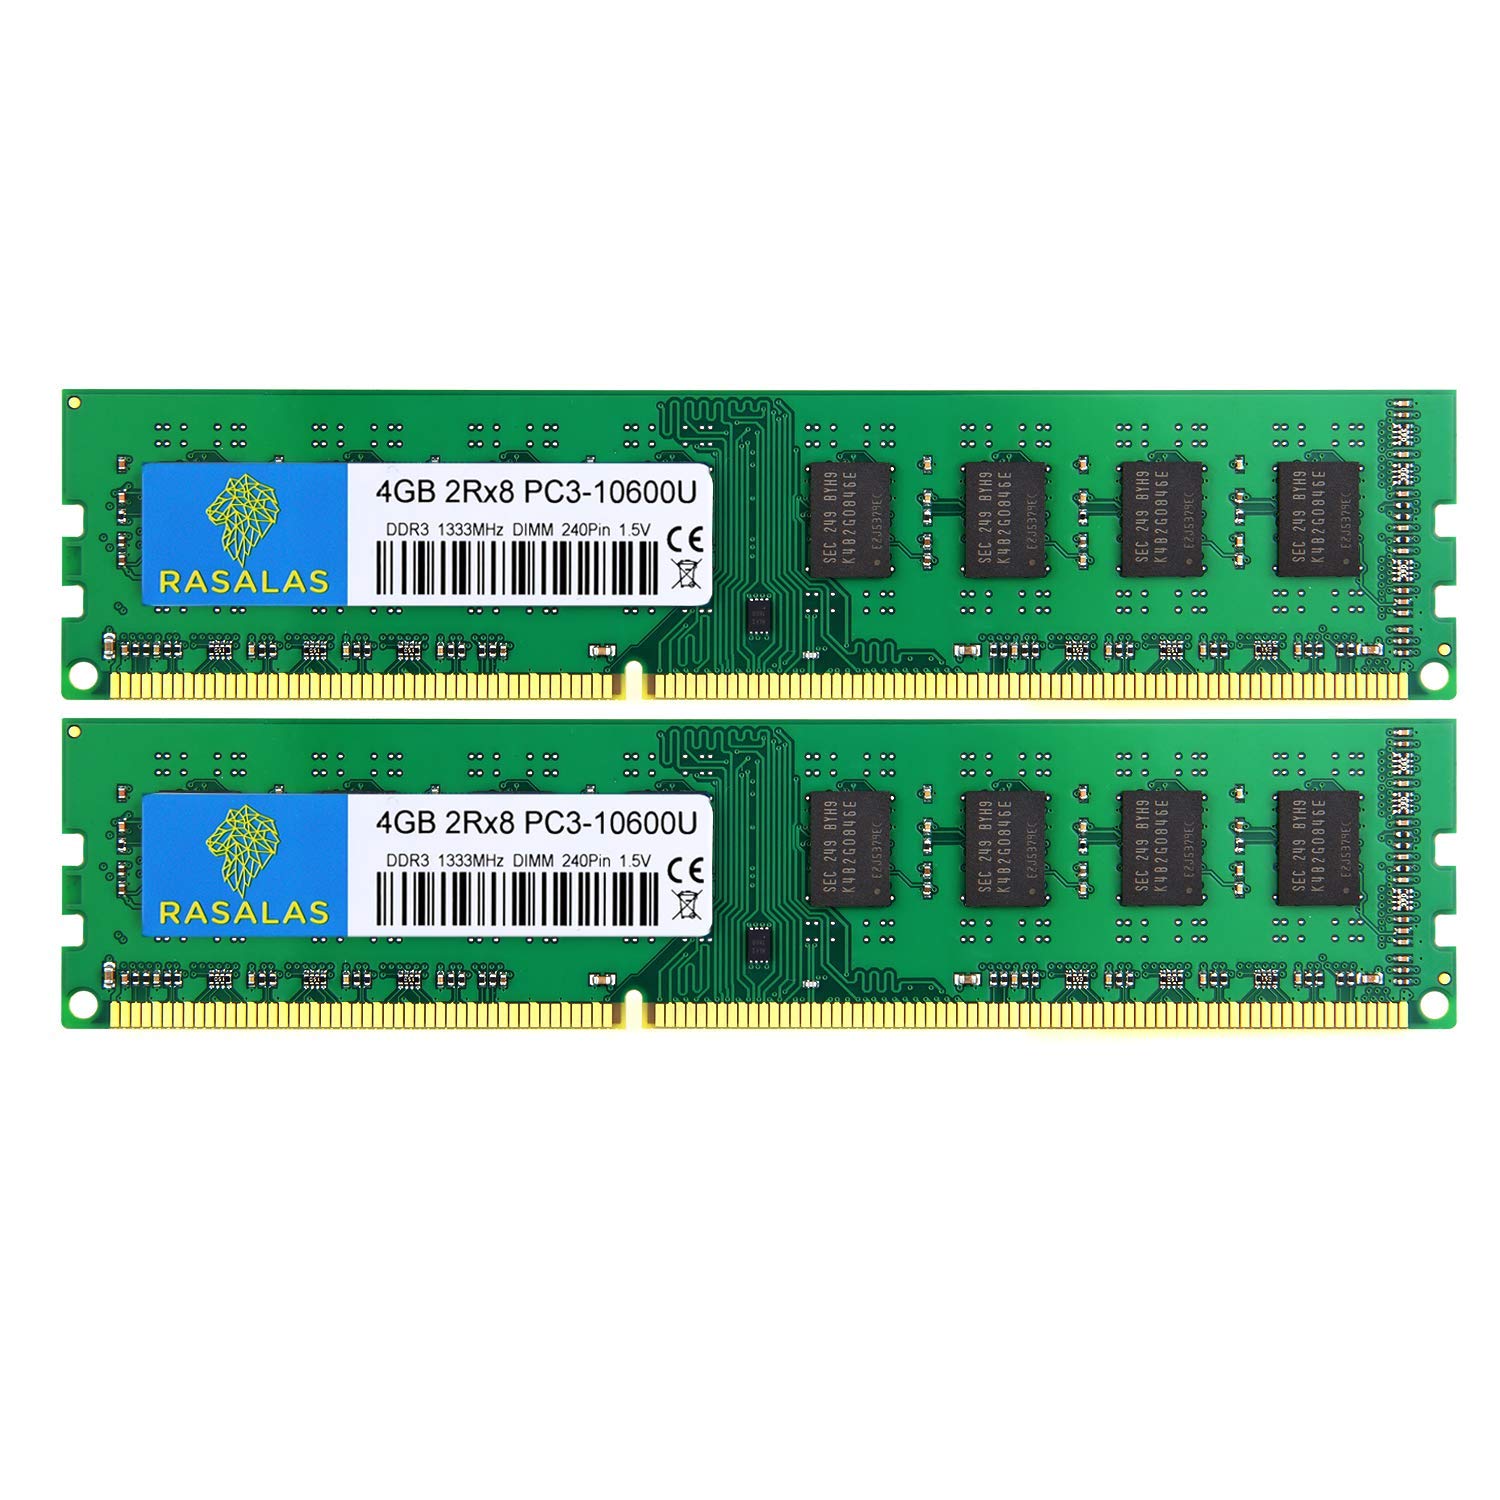 Rasalas 8GB Kit (2x4GB) PC3-10600 DDR3 1333 PC3 10600U Ram DDR3 2Rx8 PC3 10600U 1333 mhz DDR3 1.5V CL9 240-pin DDR3 Memory Module Upgrade for Desktop